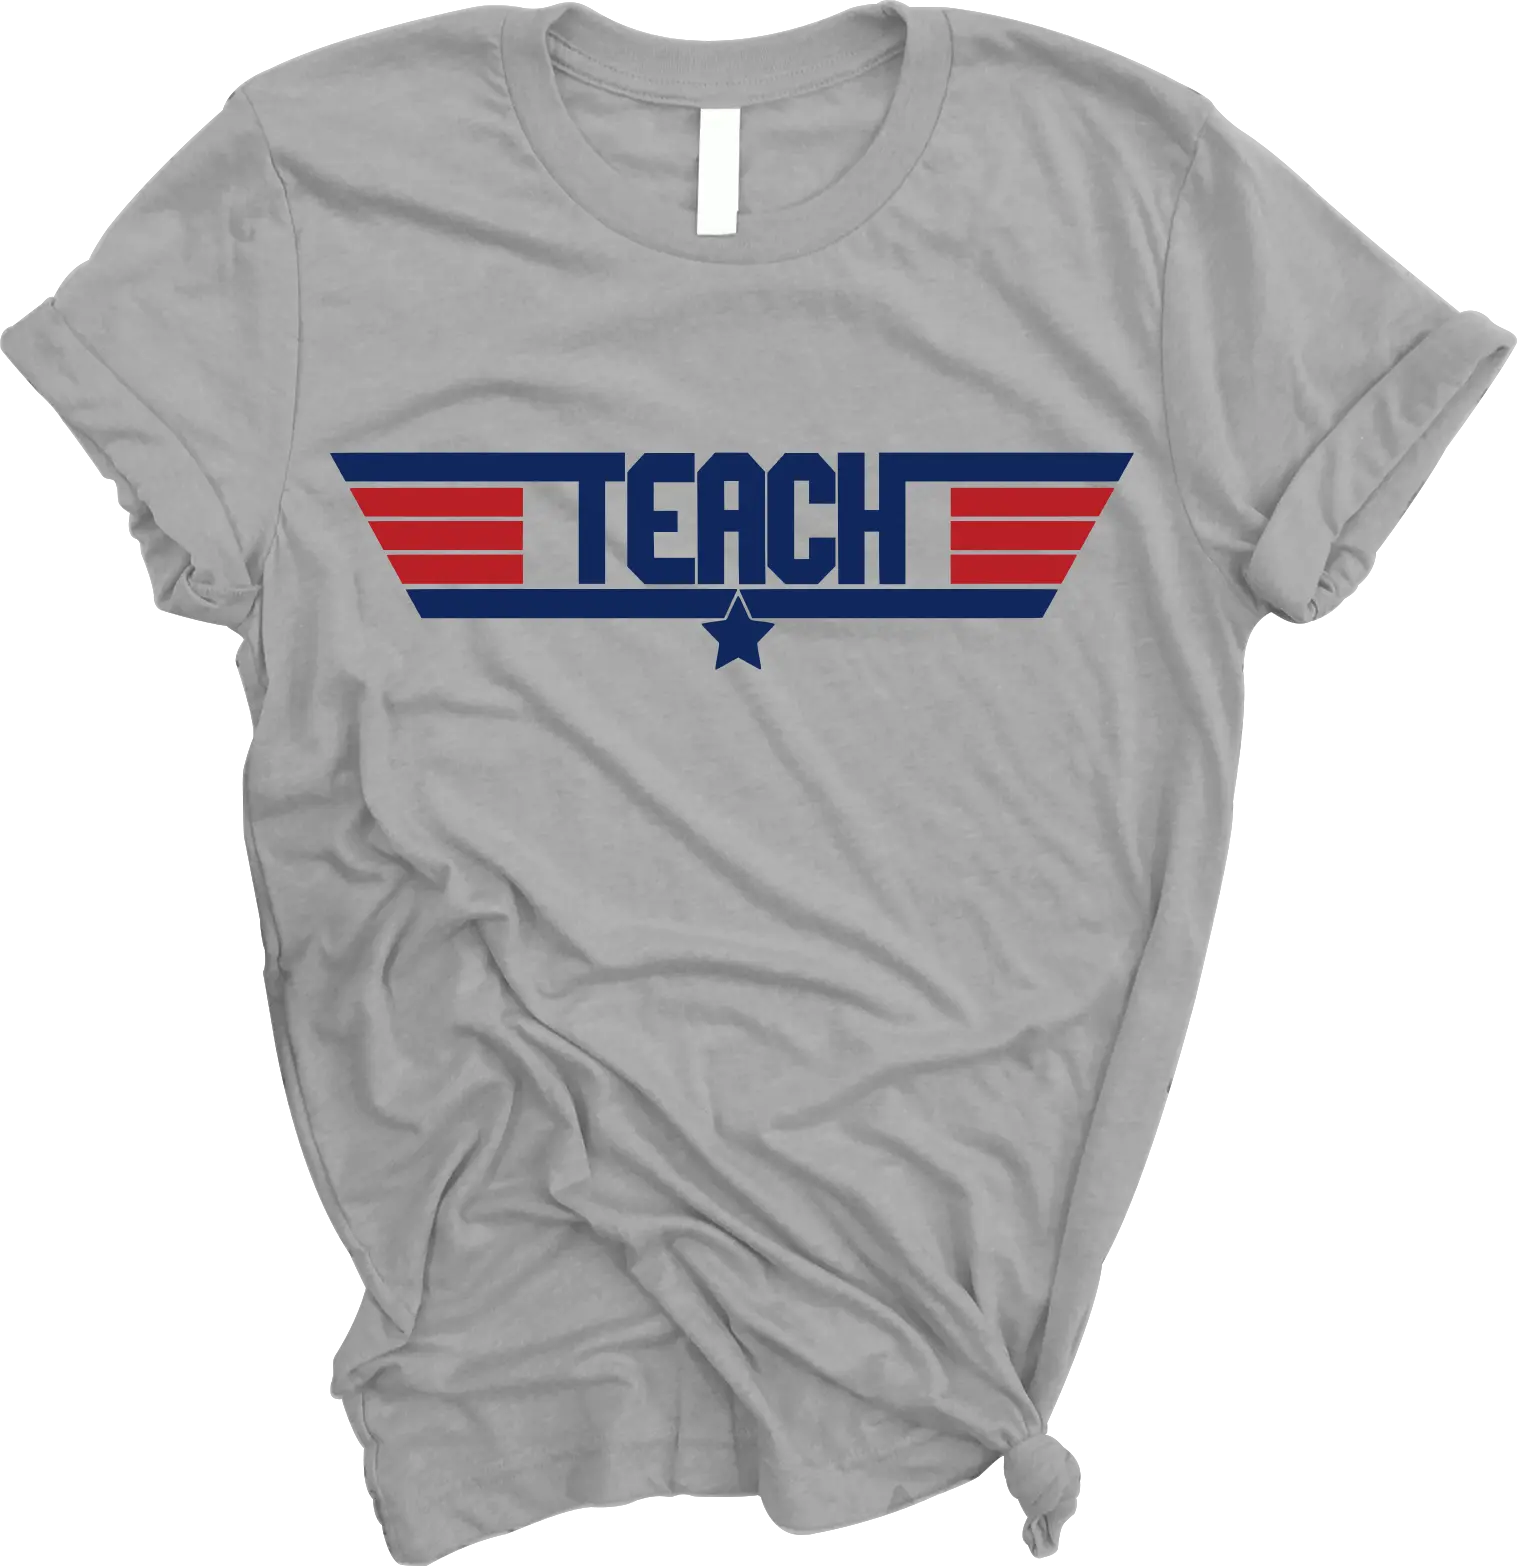 Teach” Top Gun Themed Shirt - The Teacher's Crate